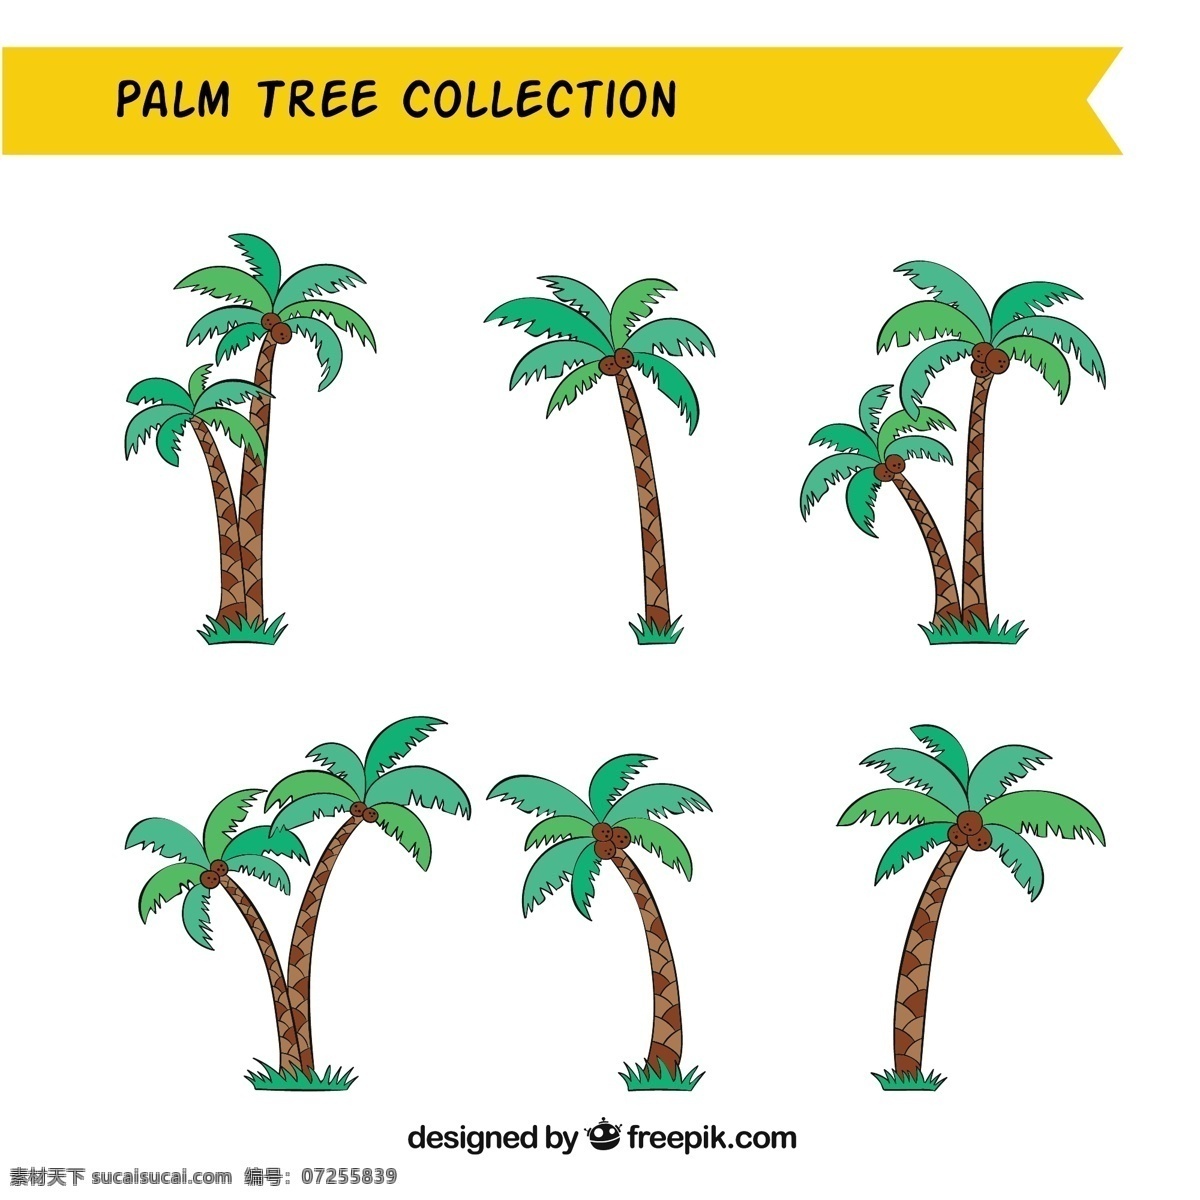 各种 棕榈 椰子树 树 手 夏 叶 自然 手绘 树叶 热带 植物 绘画 棕榈树 树木 环境 椰子 画 棕榈叶 概略